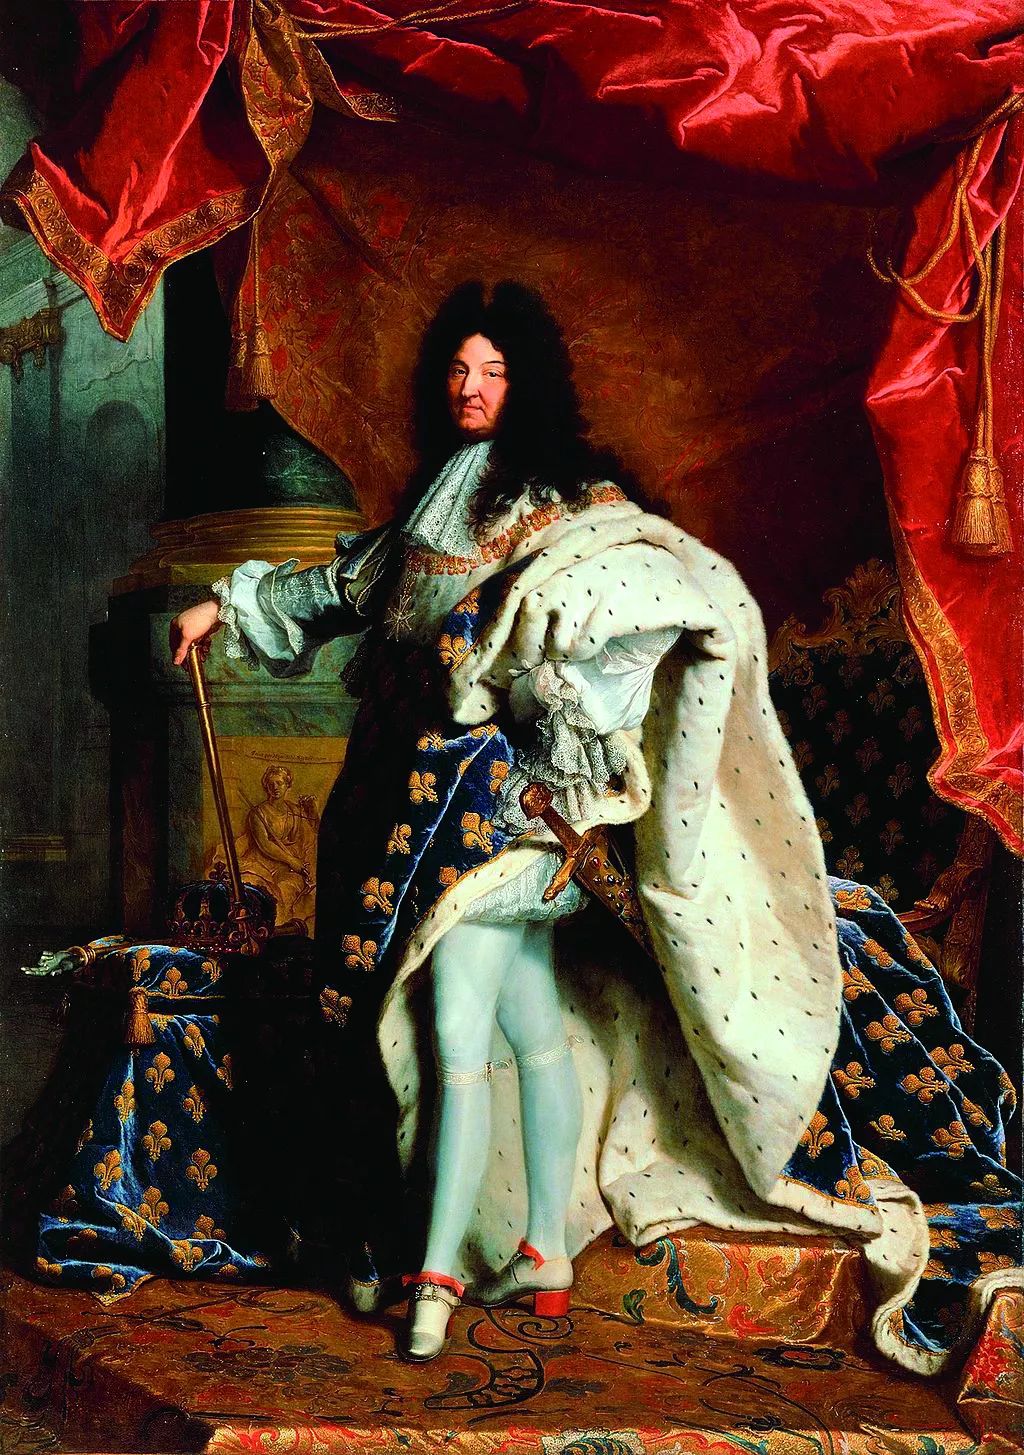 而路易十五的洛可可风格时期,男装仍继续采用下摆宽松的上衣,衣袖带有